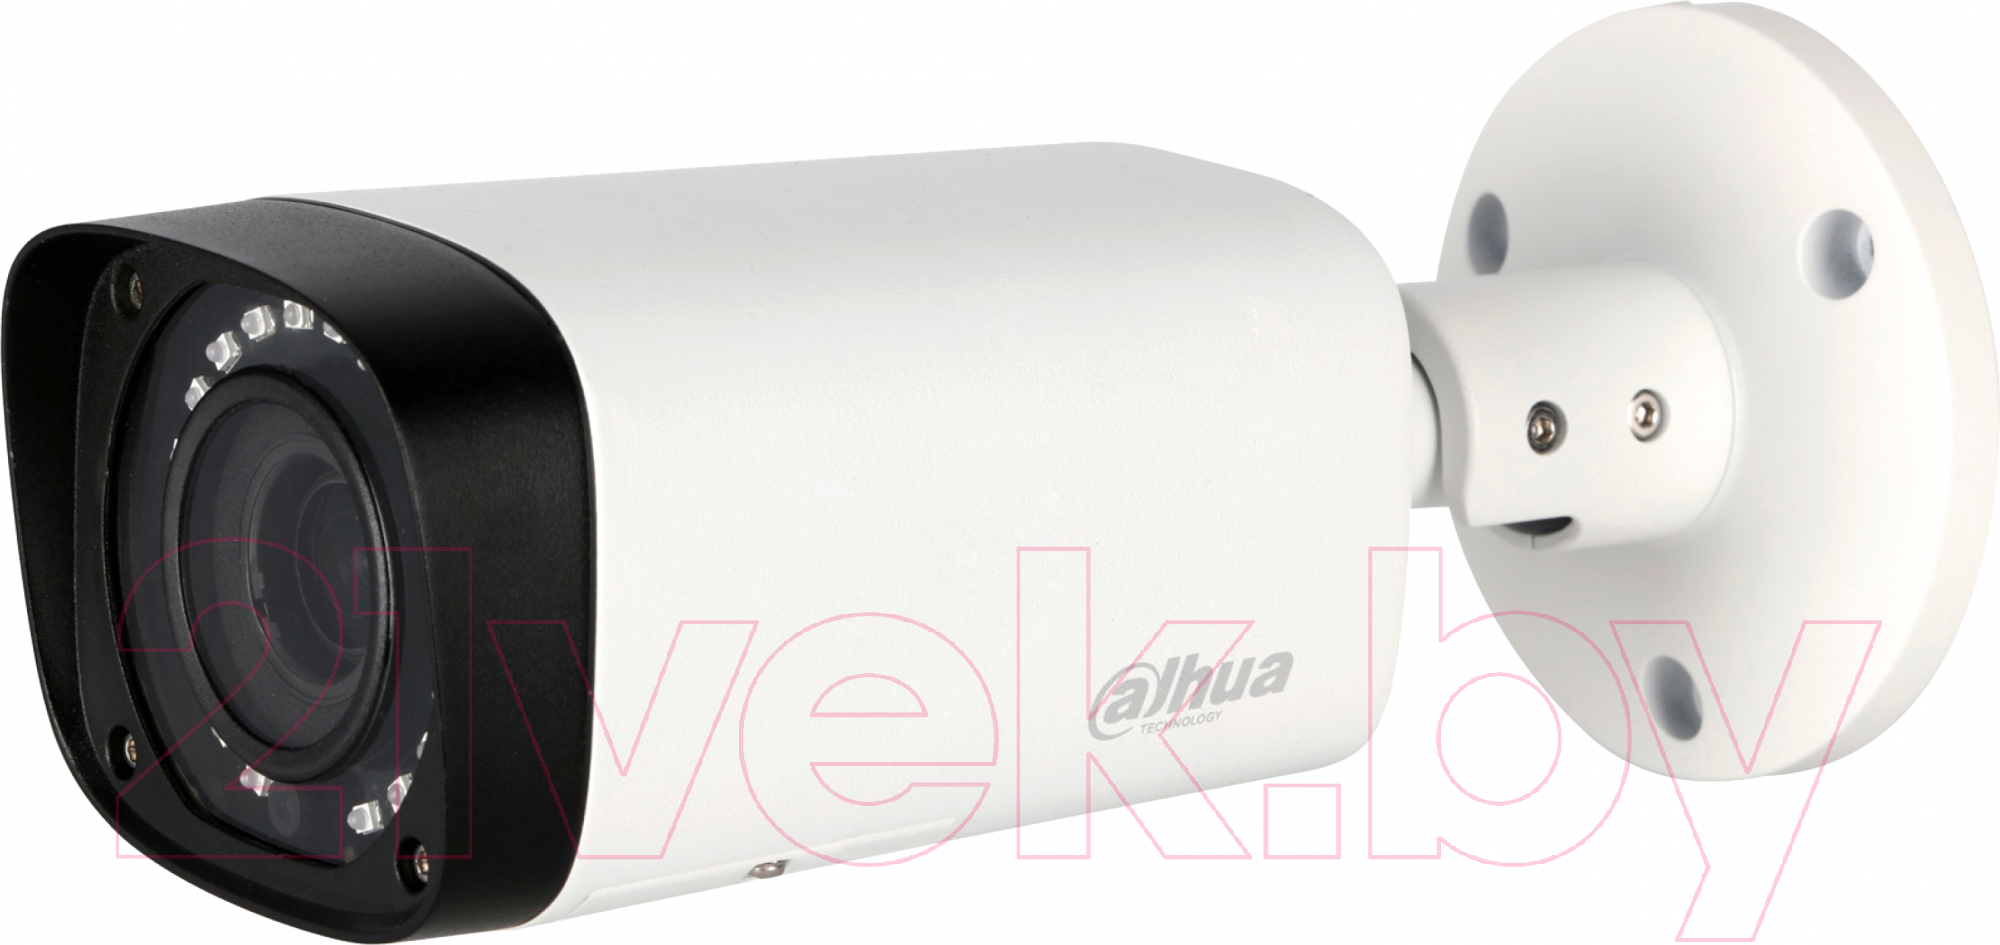 Аналоговая камера Dahua DH-HAC-HFW1200RP-VF-S3